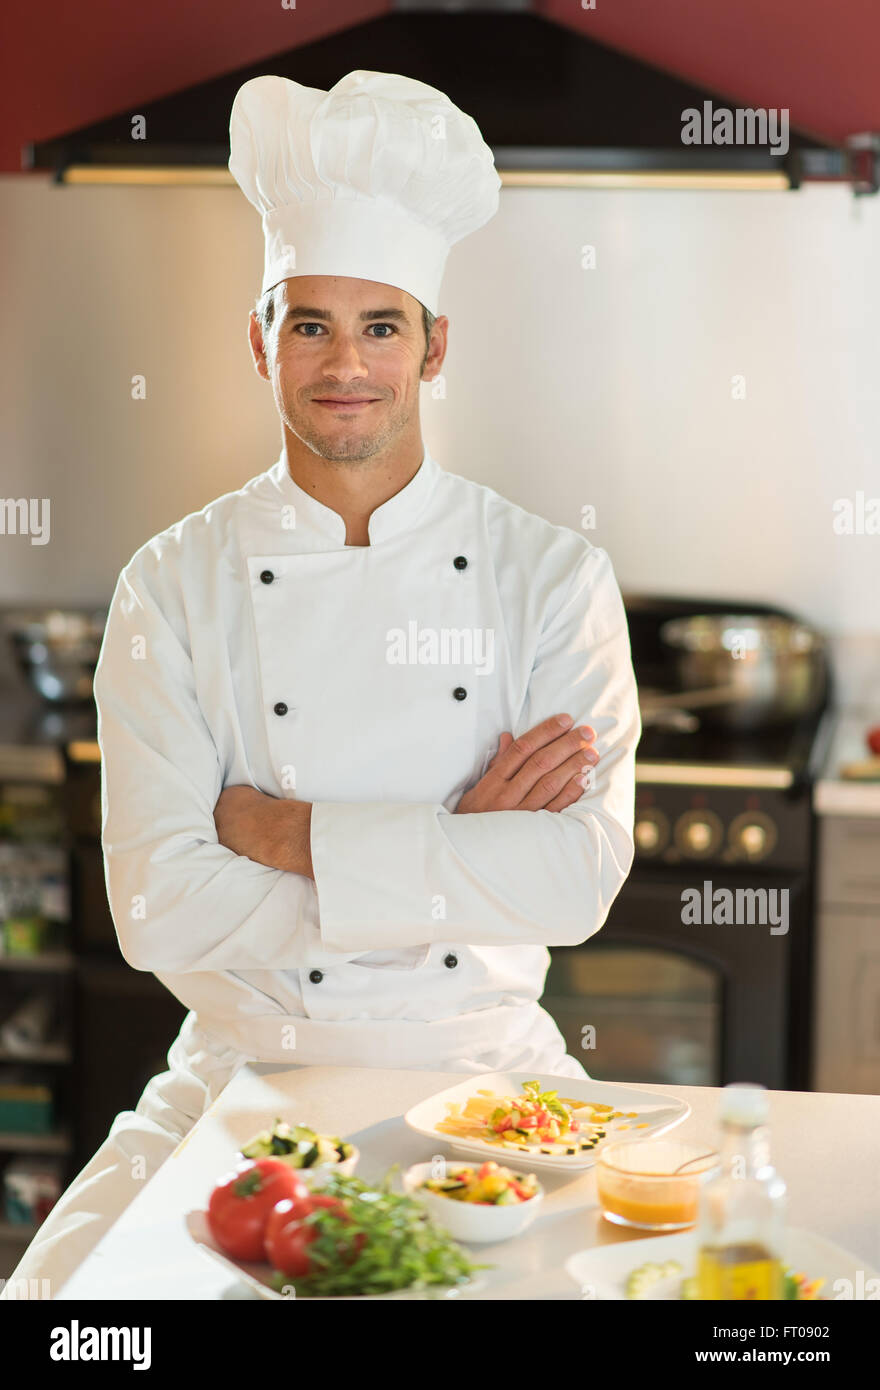 https://c8.alamy.com/compes/ft0902/retrato-de-un-hombre-chef-el-esta-mirando-a-la-camara-con-confianza-frente-a-una-mesa-de-cocina-con-platos-coloridos-el-esta-vistiendo-ropa-blanca-y-un-sombrero-de-chef-otra-mujer-chef-de-cocina-esta-detras-de-el-ft0902.jpg